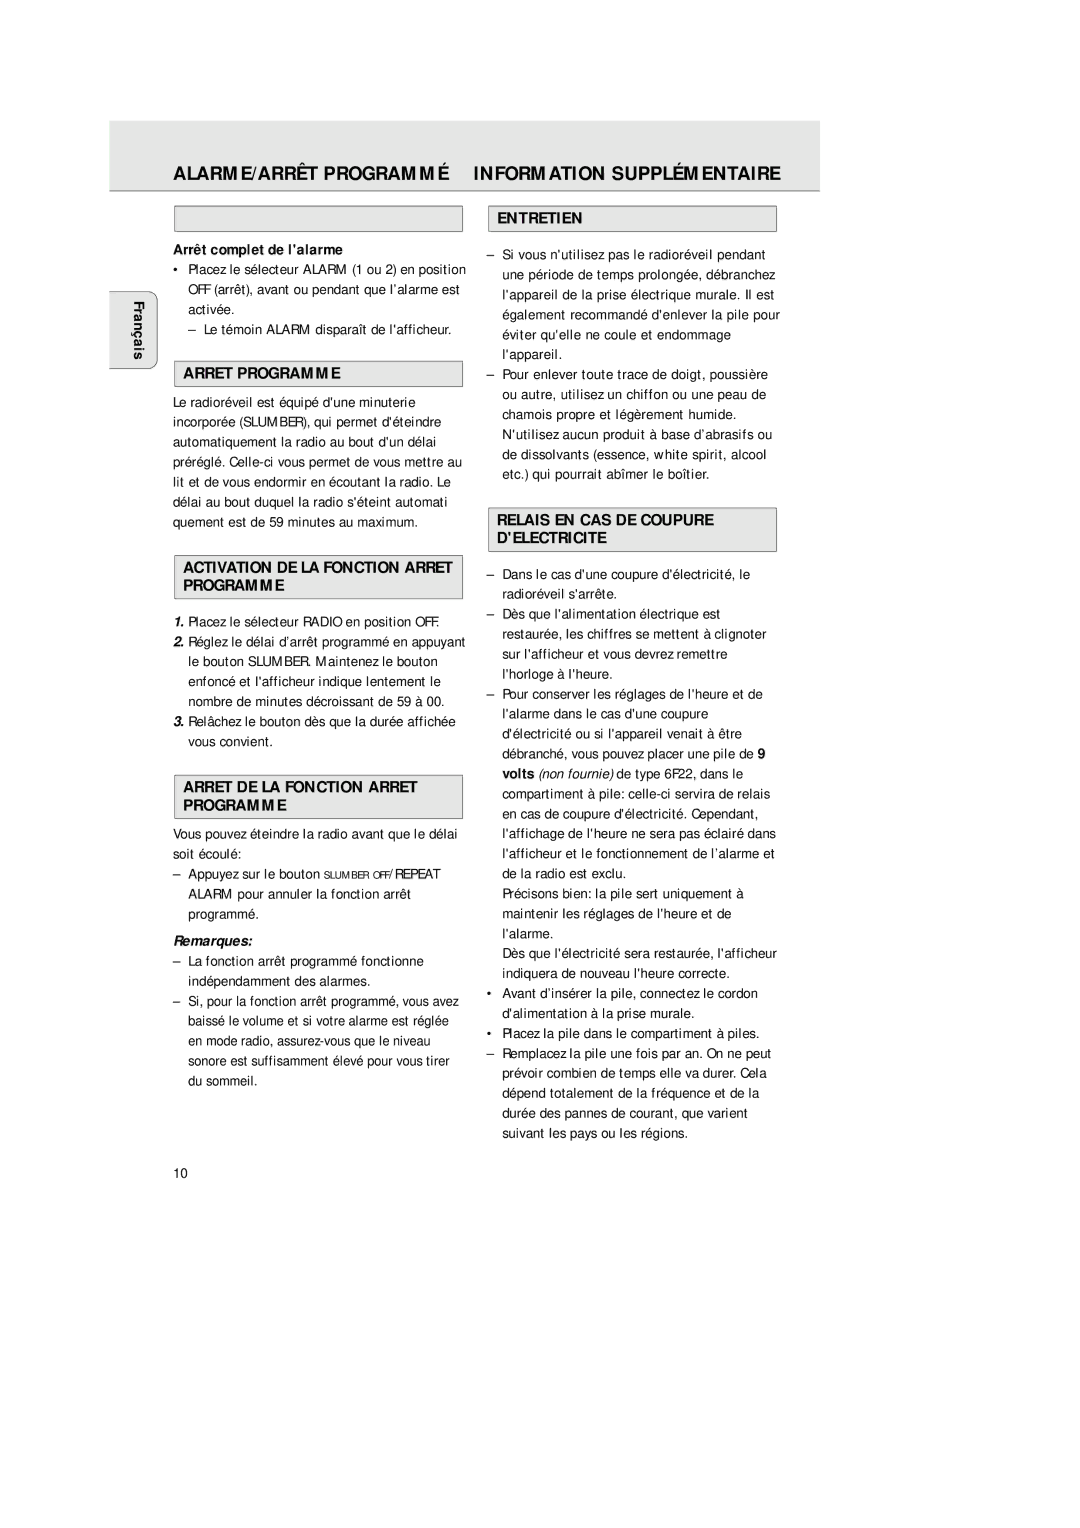 Philips AJ 3380 manual ALARME/ARRÊT Programmé Information Supplémentaire 